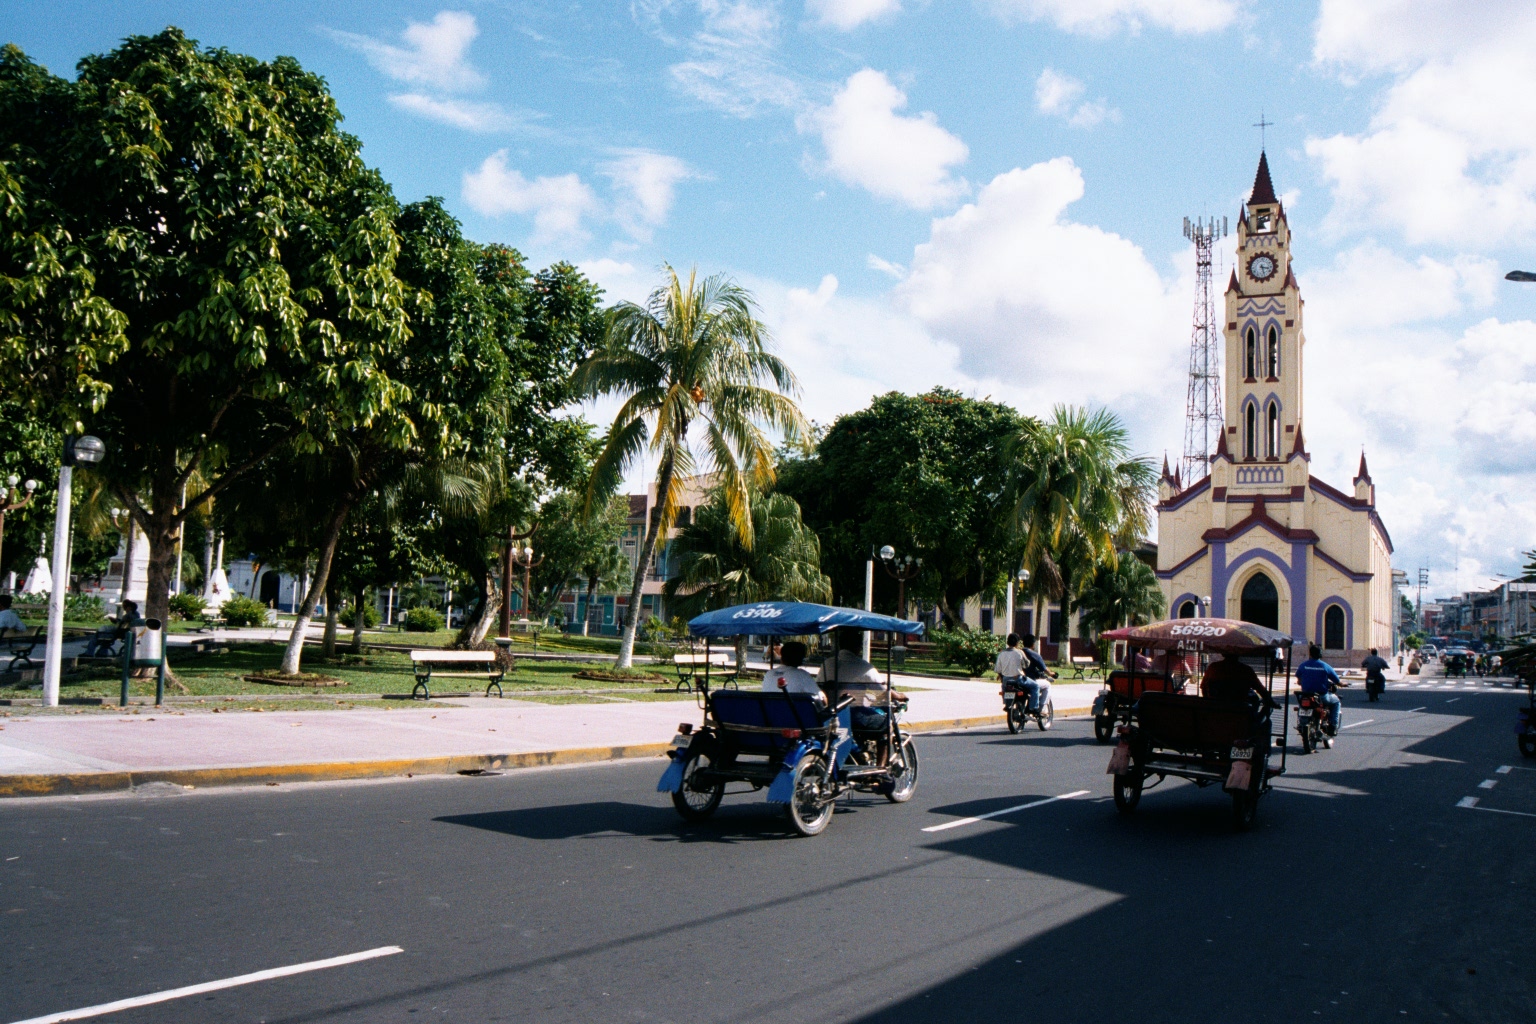 Plaza in Iquitos Peru - Feb 2002